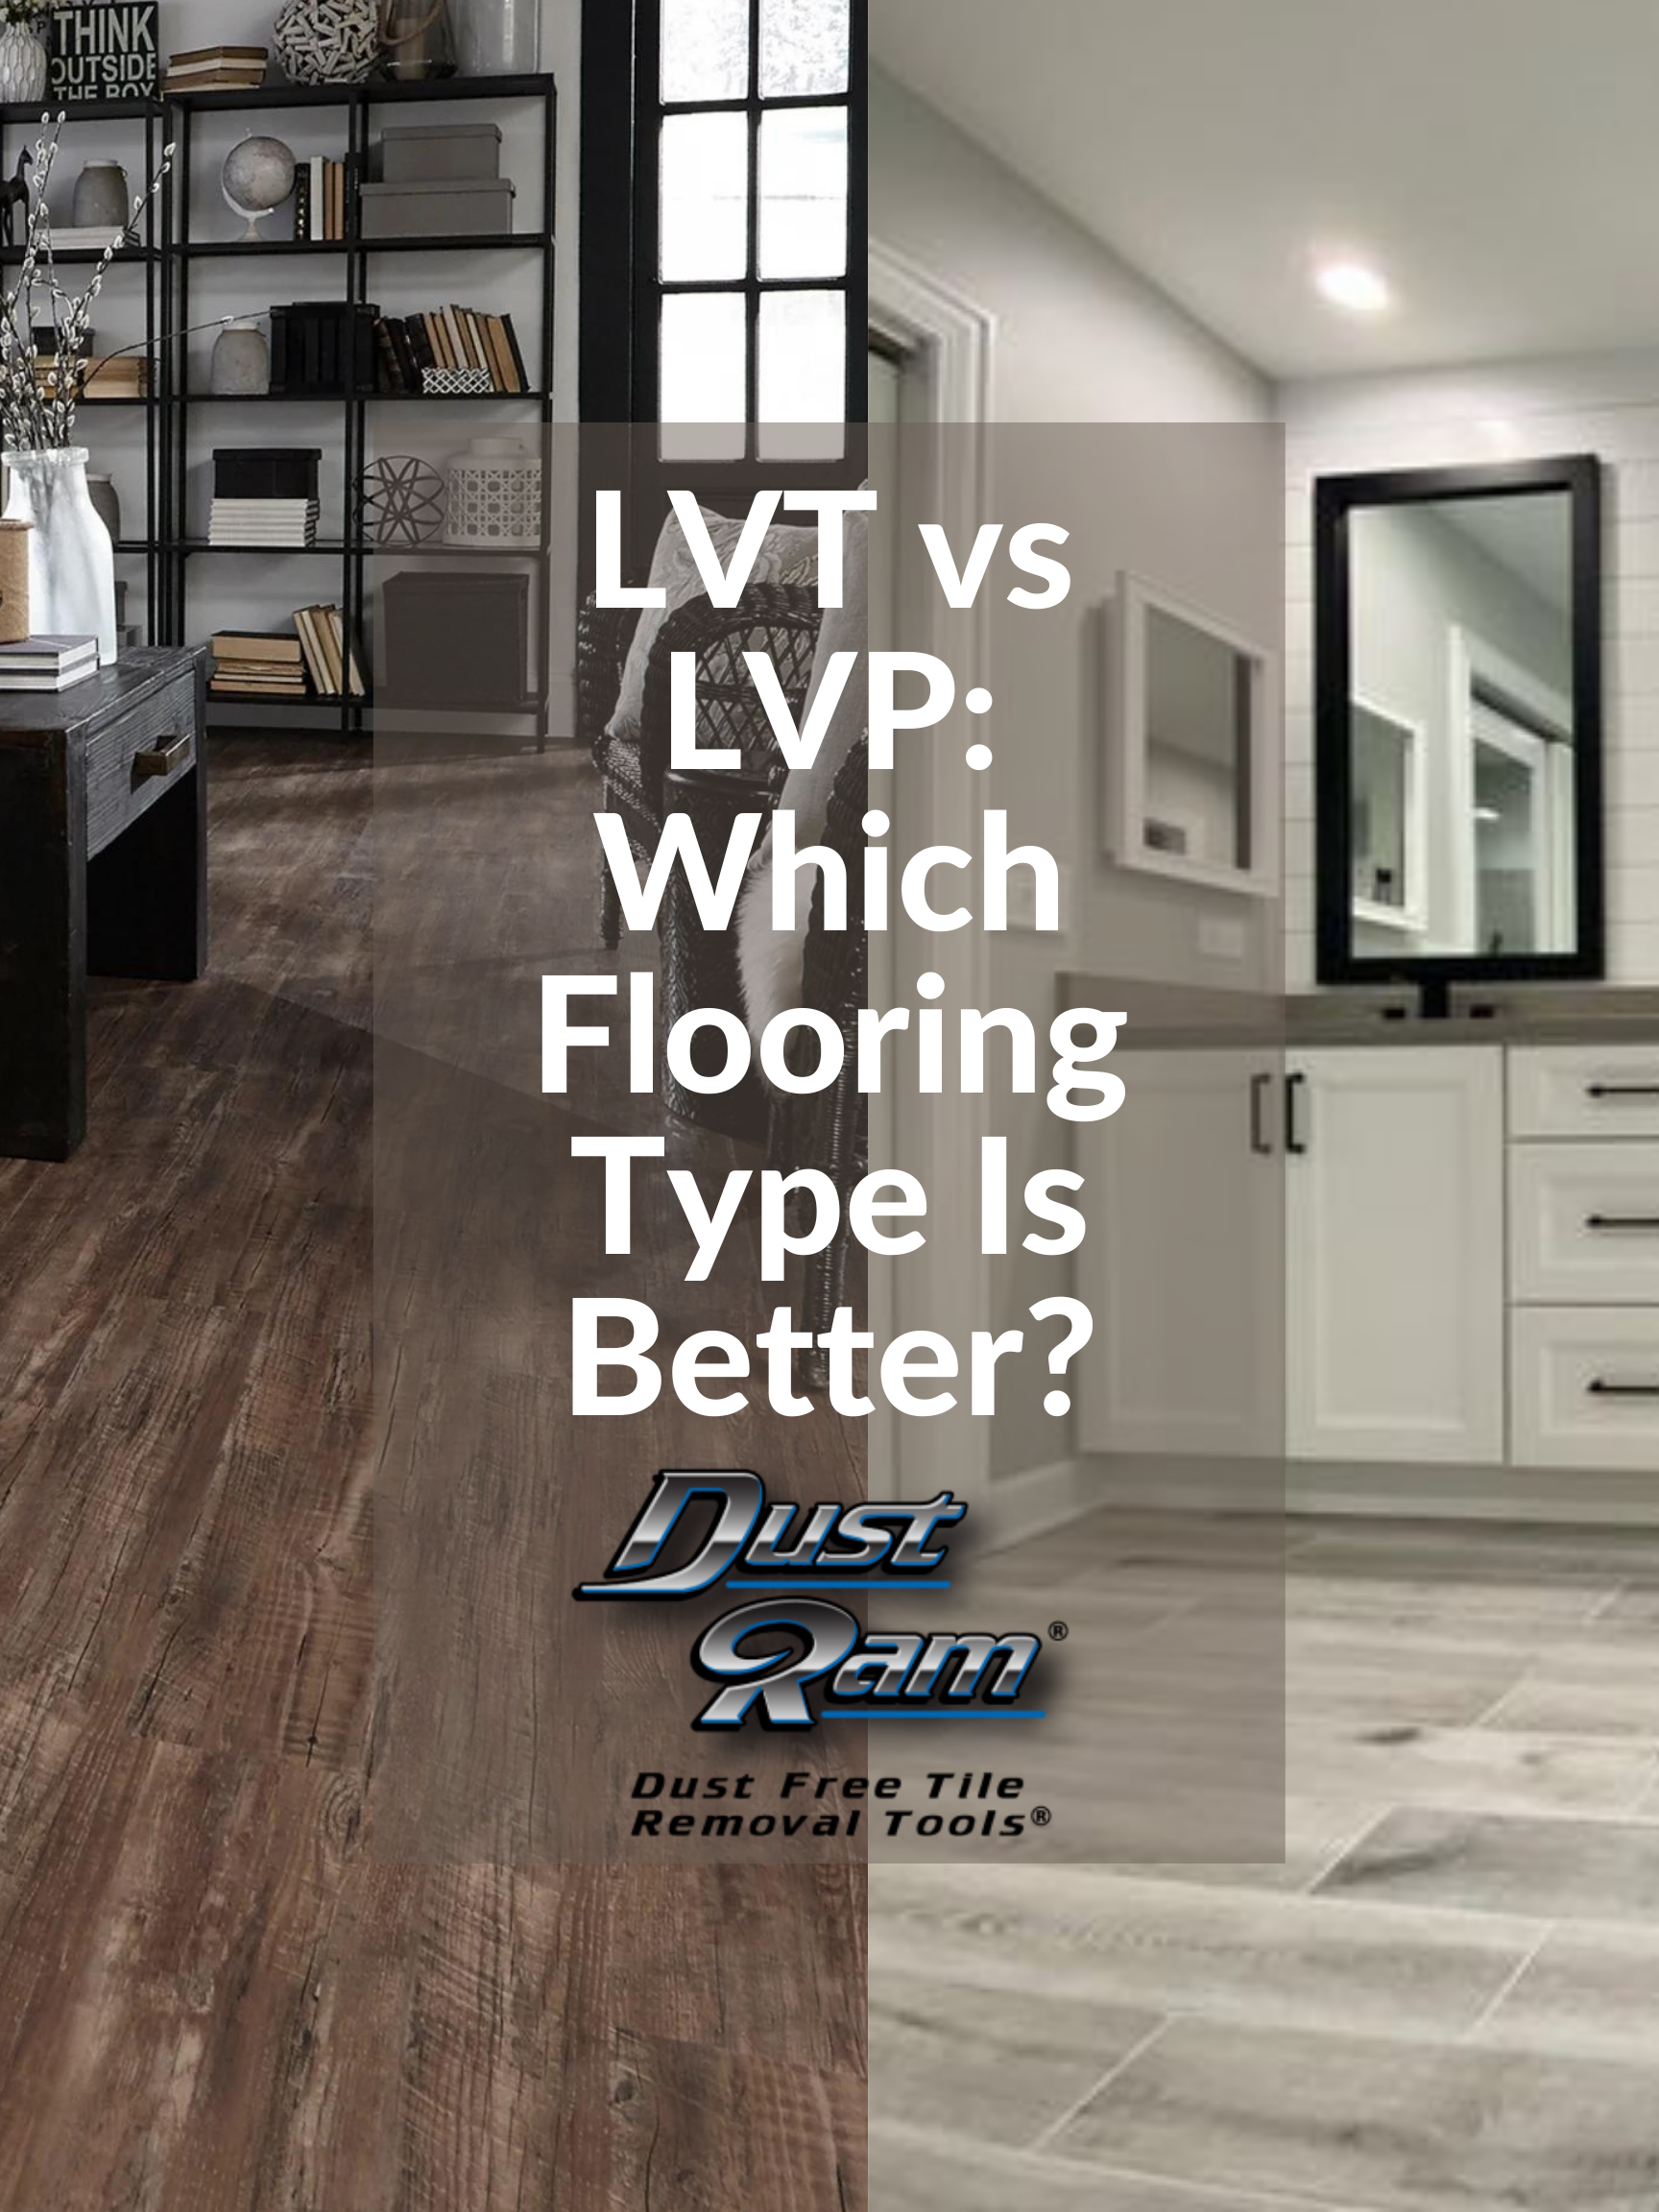 lvt vs lvp flooring